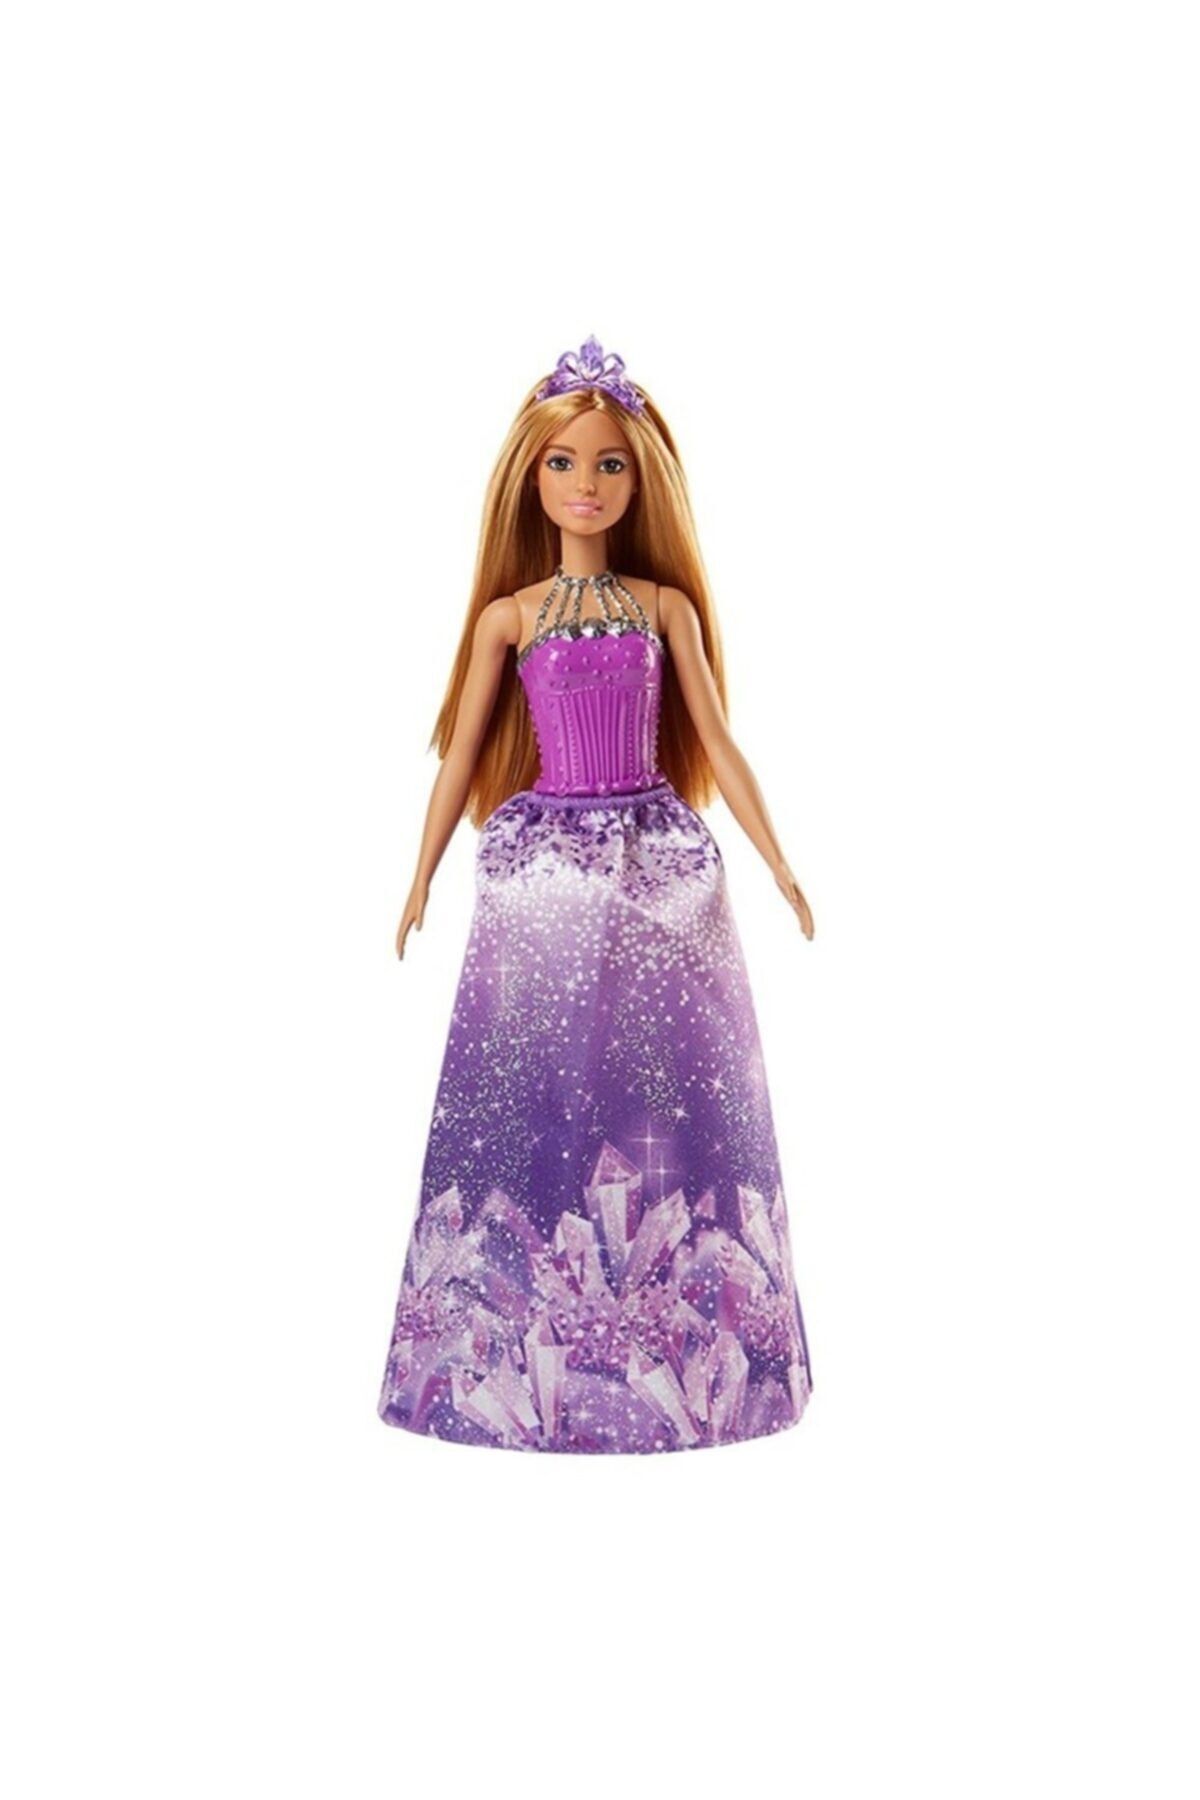 Barbie Barbie Dreamtopia Prenses Barbie Bebekler Fjc94-fjc97